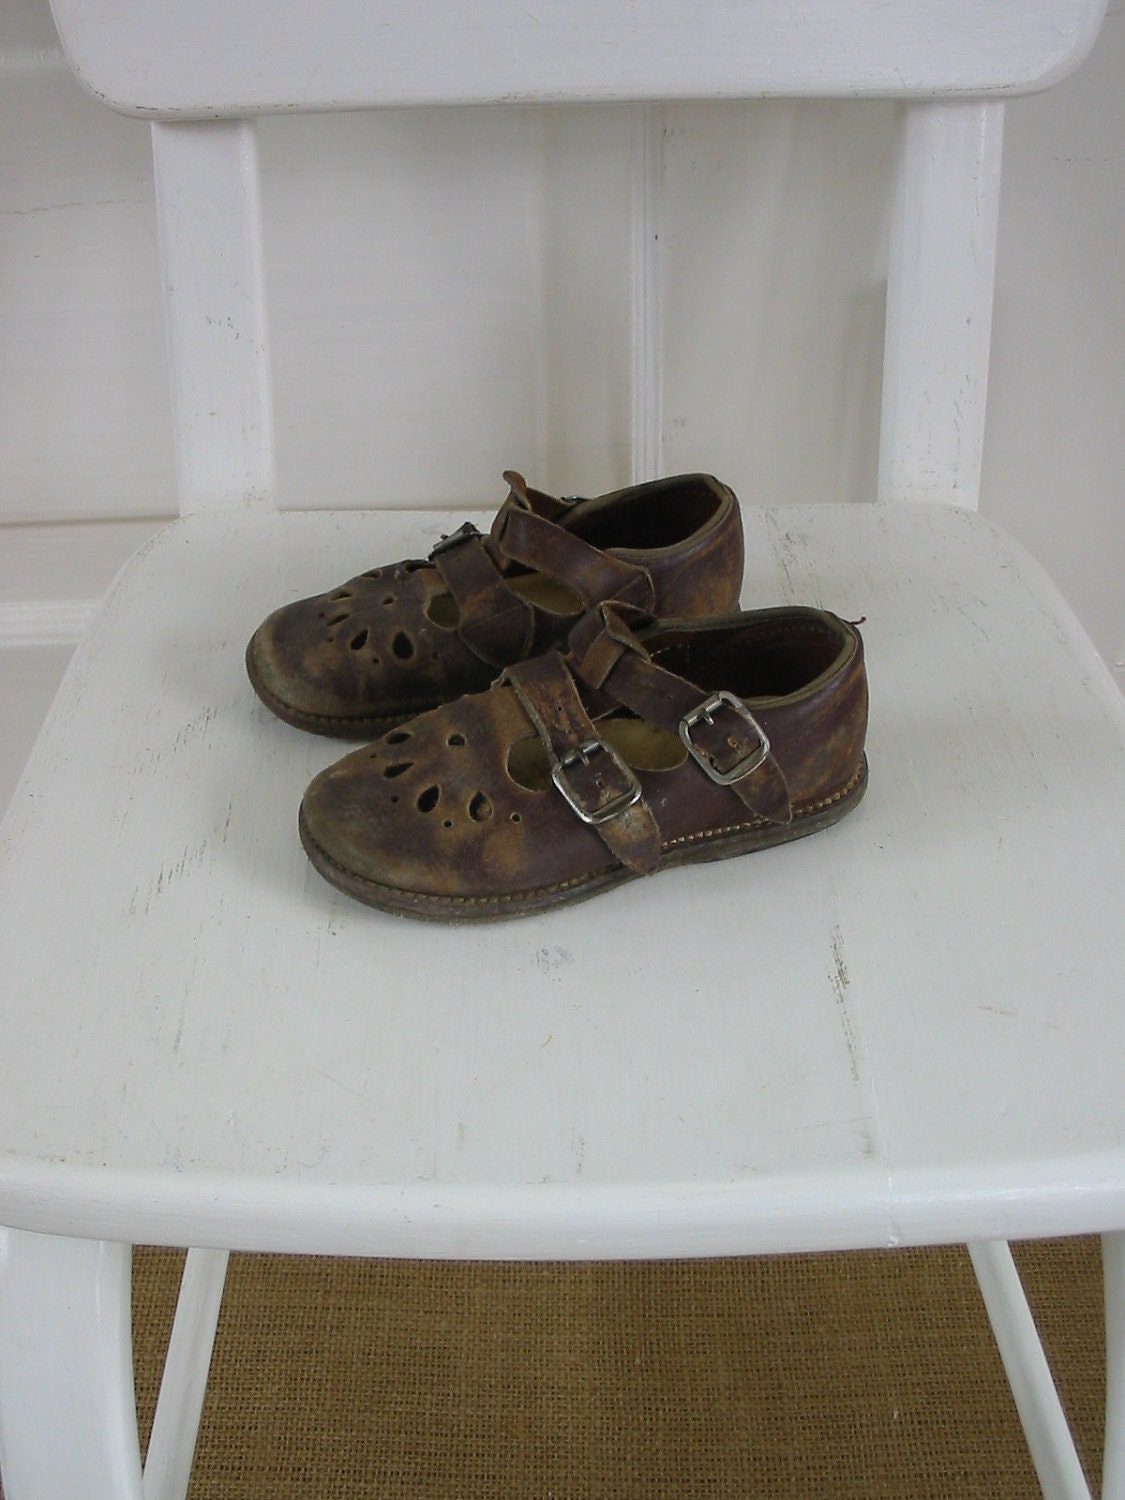 Vintage Children Girl Shoes Mary Janes Nursery Decor Leather - vintagejane